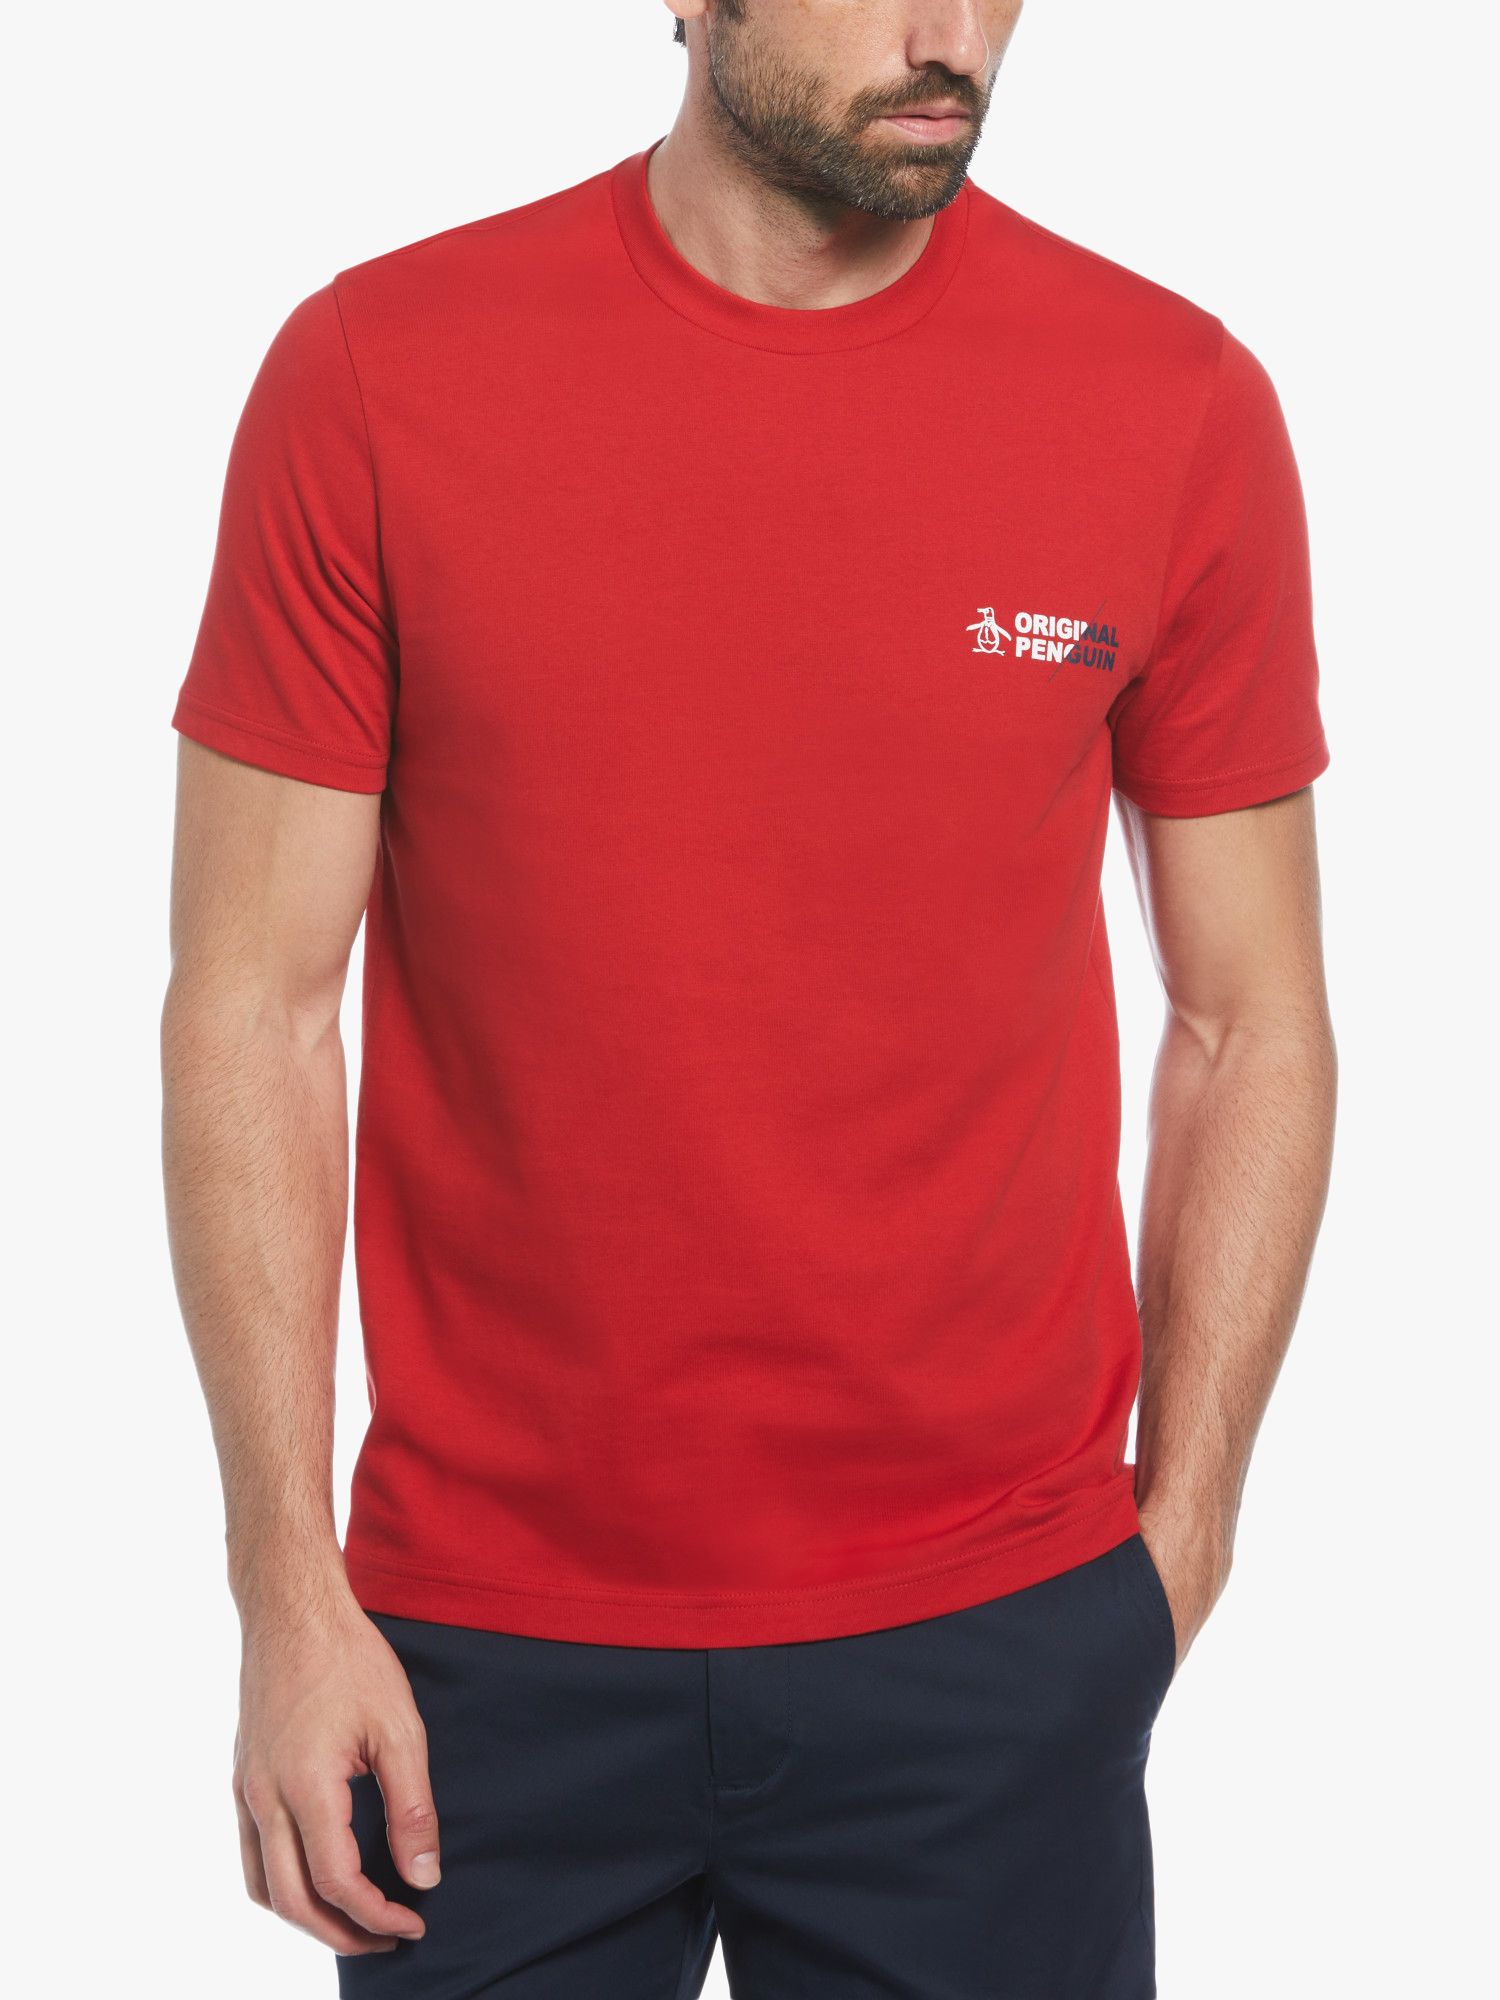 Original Penguin Short Sleeve Spliced Logo T-Shirt, Red, L